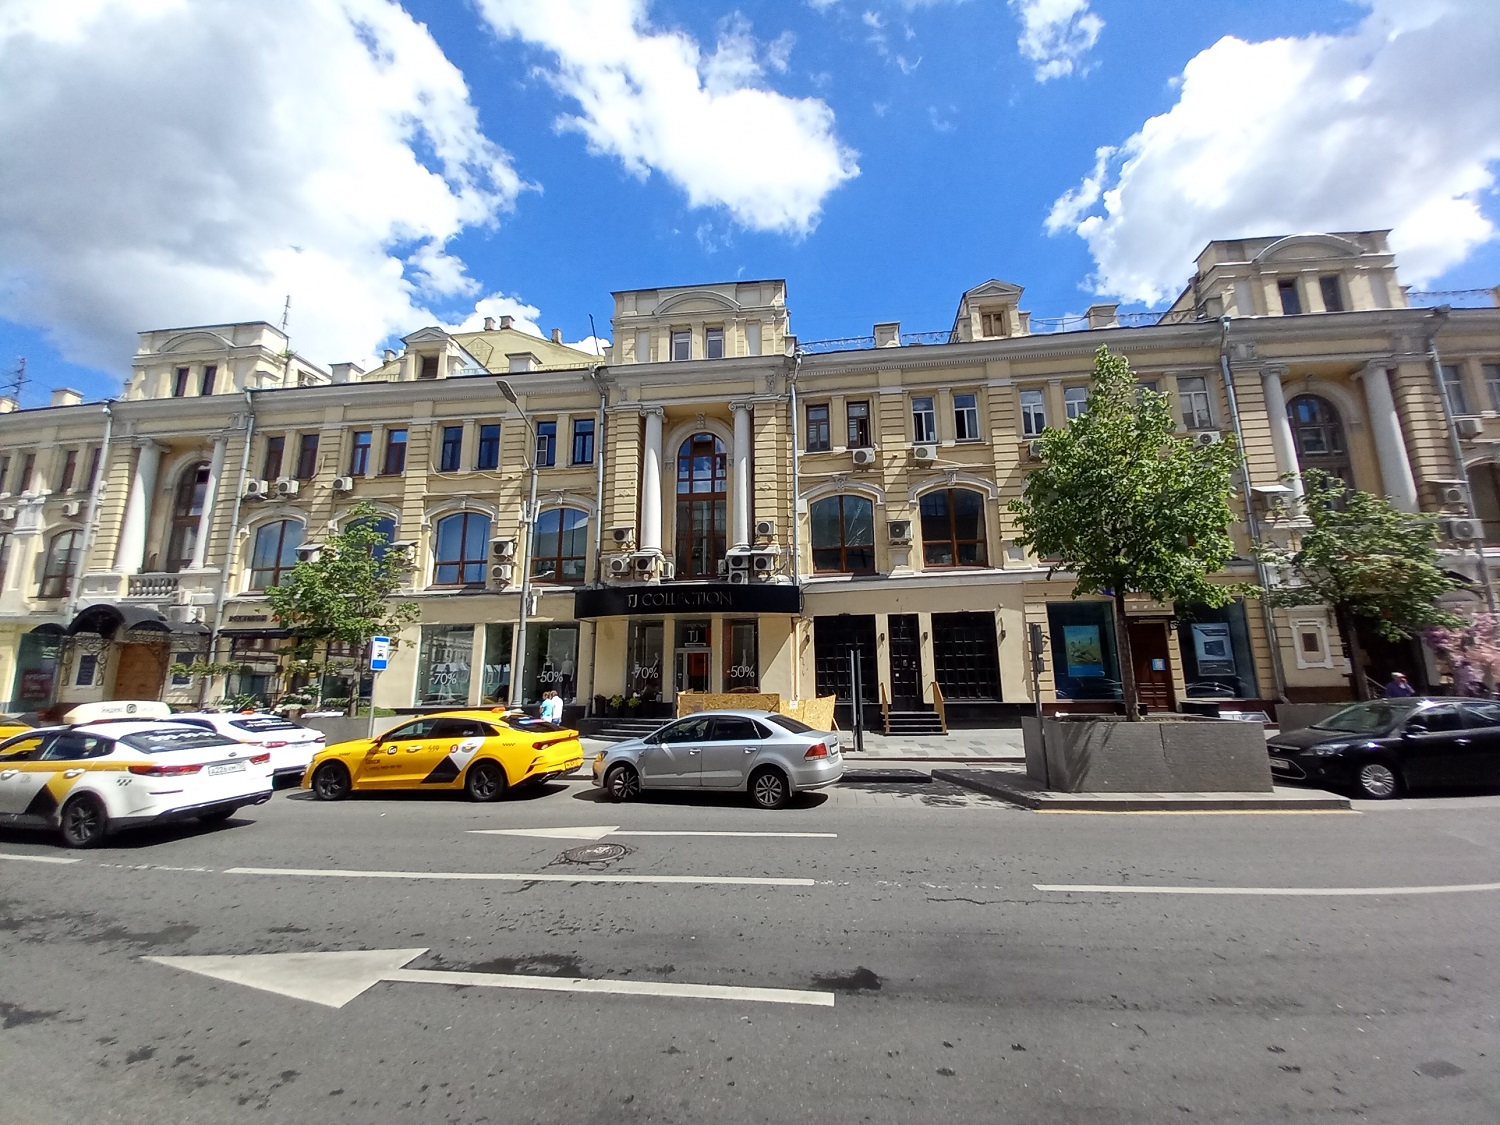 Доходный дом с магазинами Московского купеческого общества